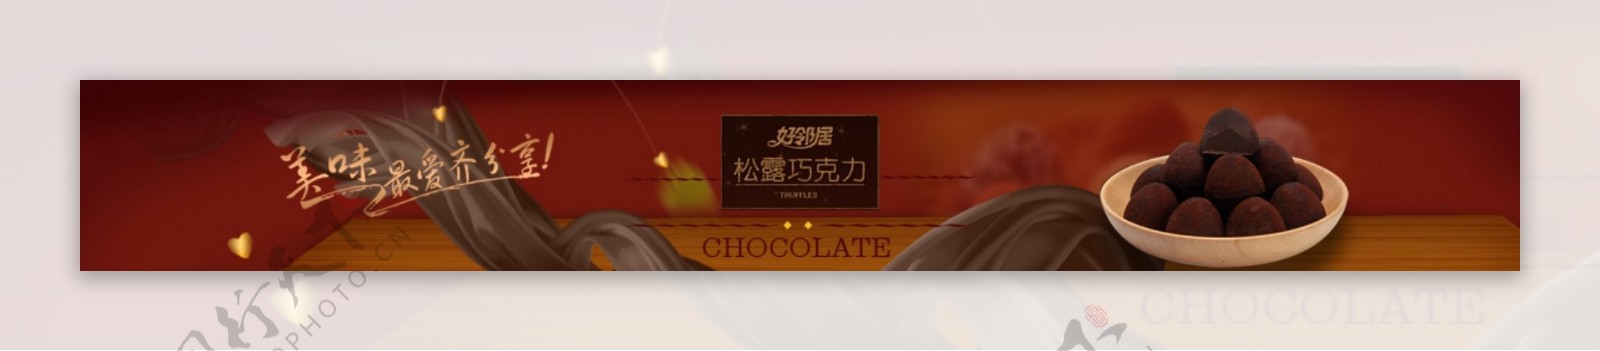 巧克力广告通栏